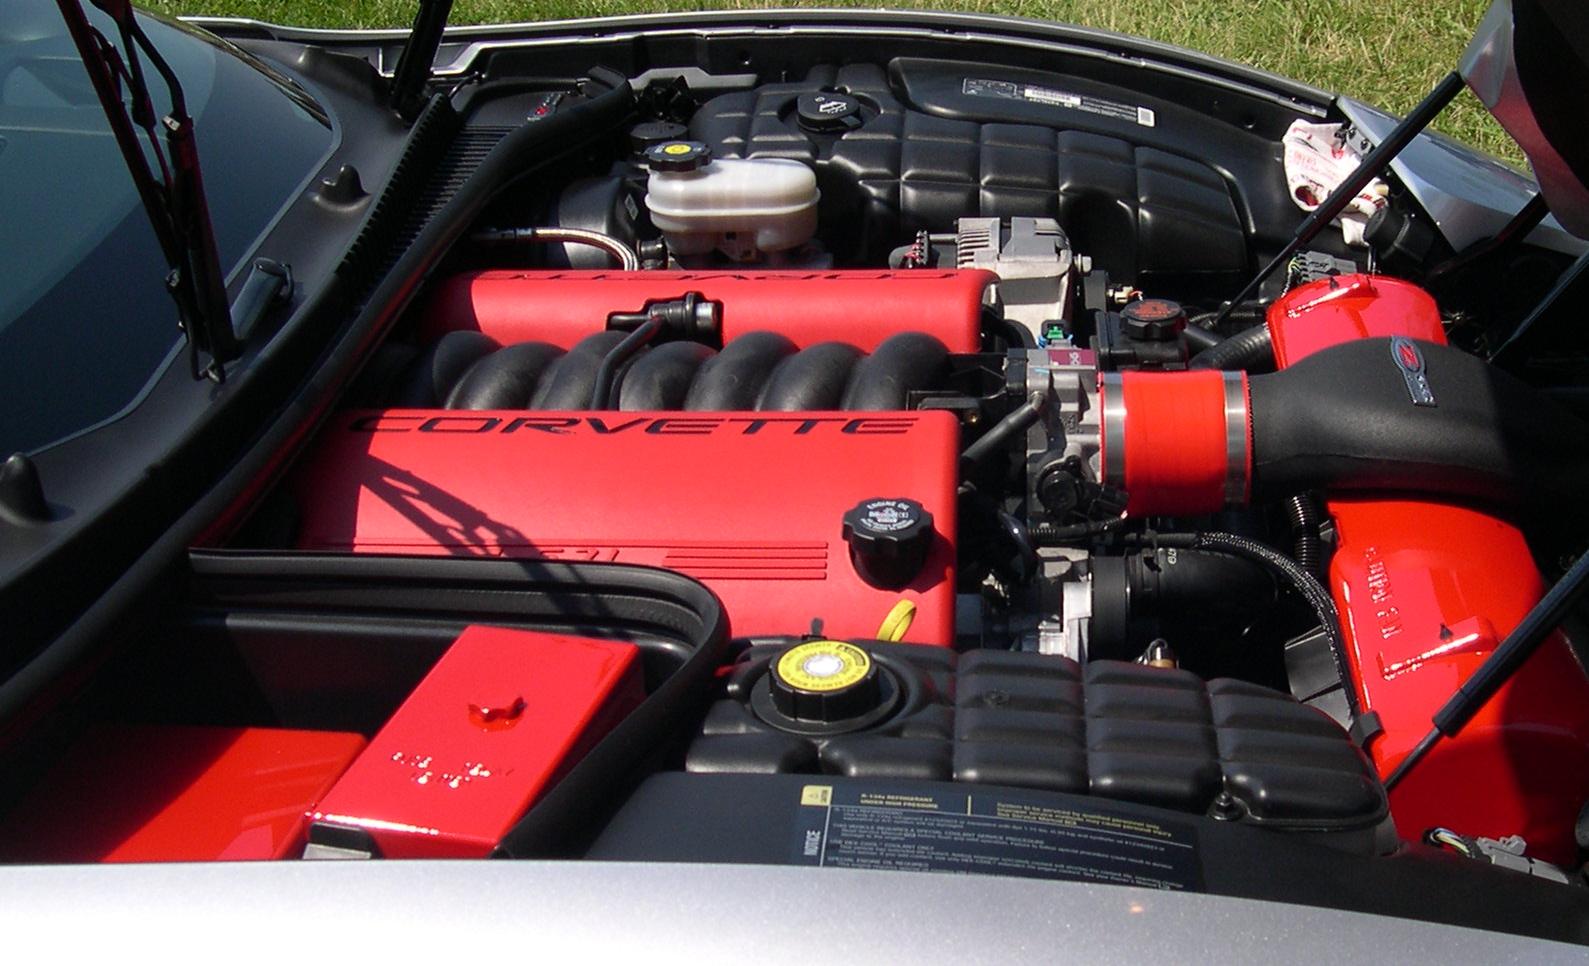 Corvette LS6 engine side view